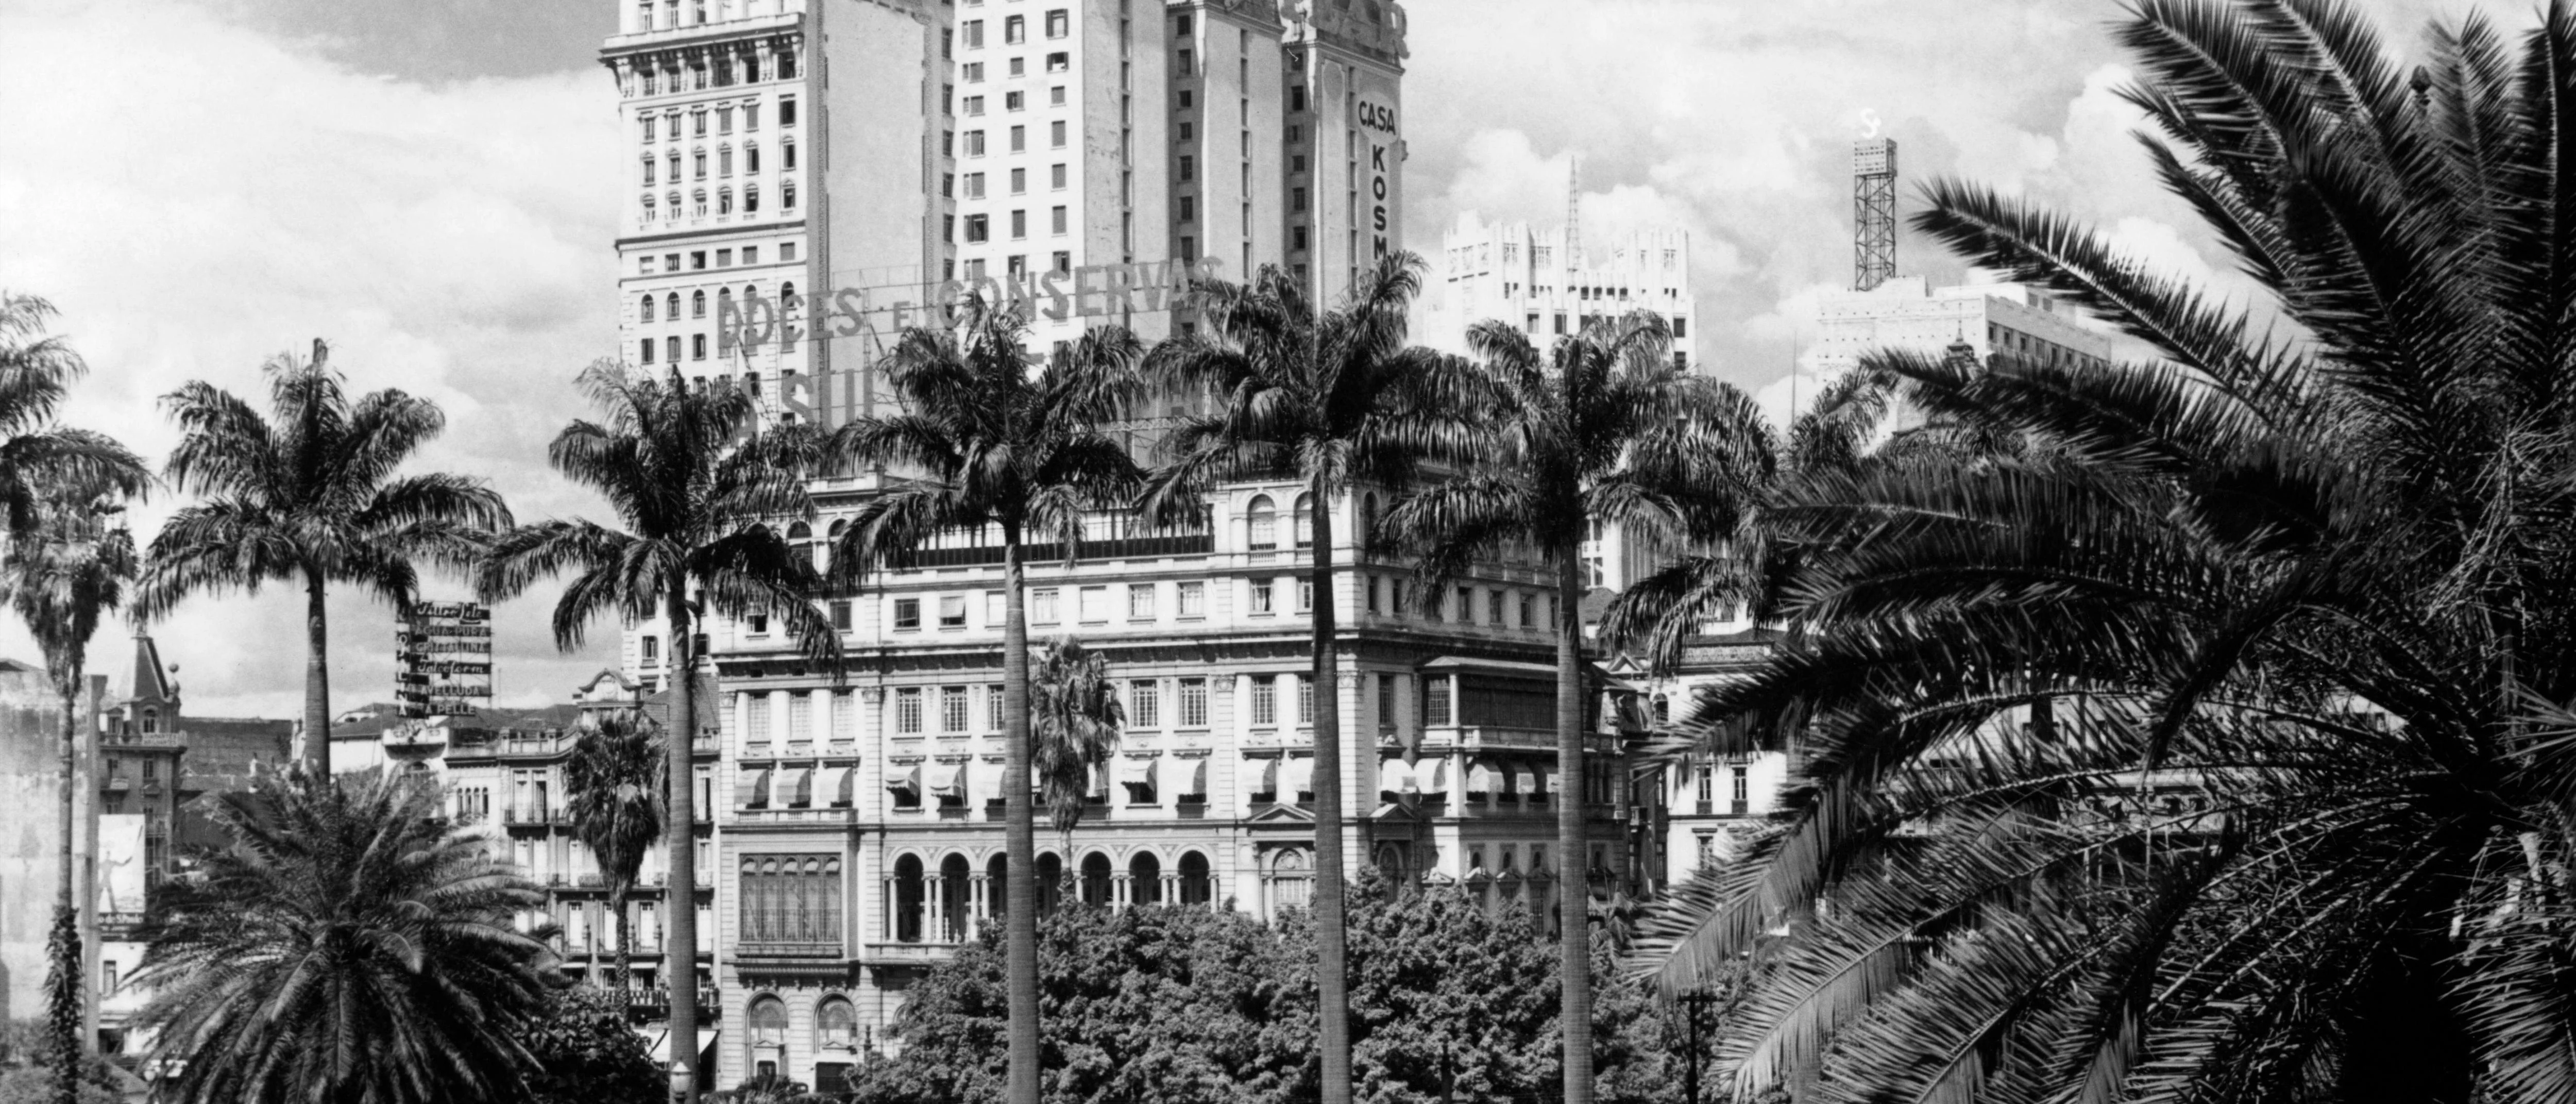 Ansicht von São Paulo mit dem Martinelli-Building in schwarz-weiß